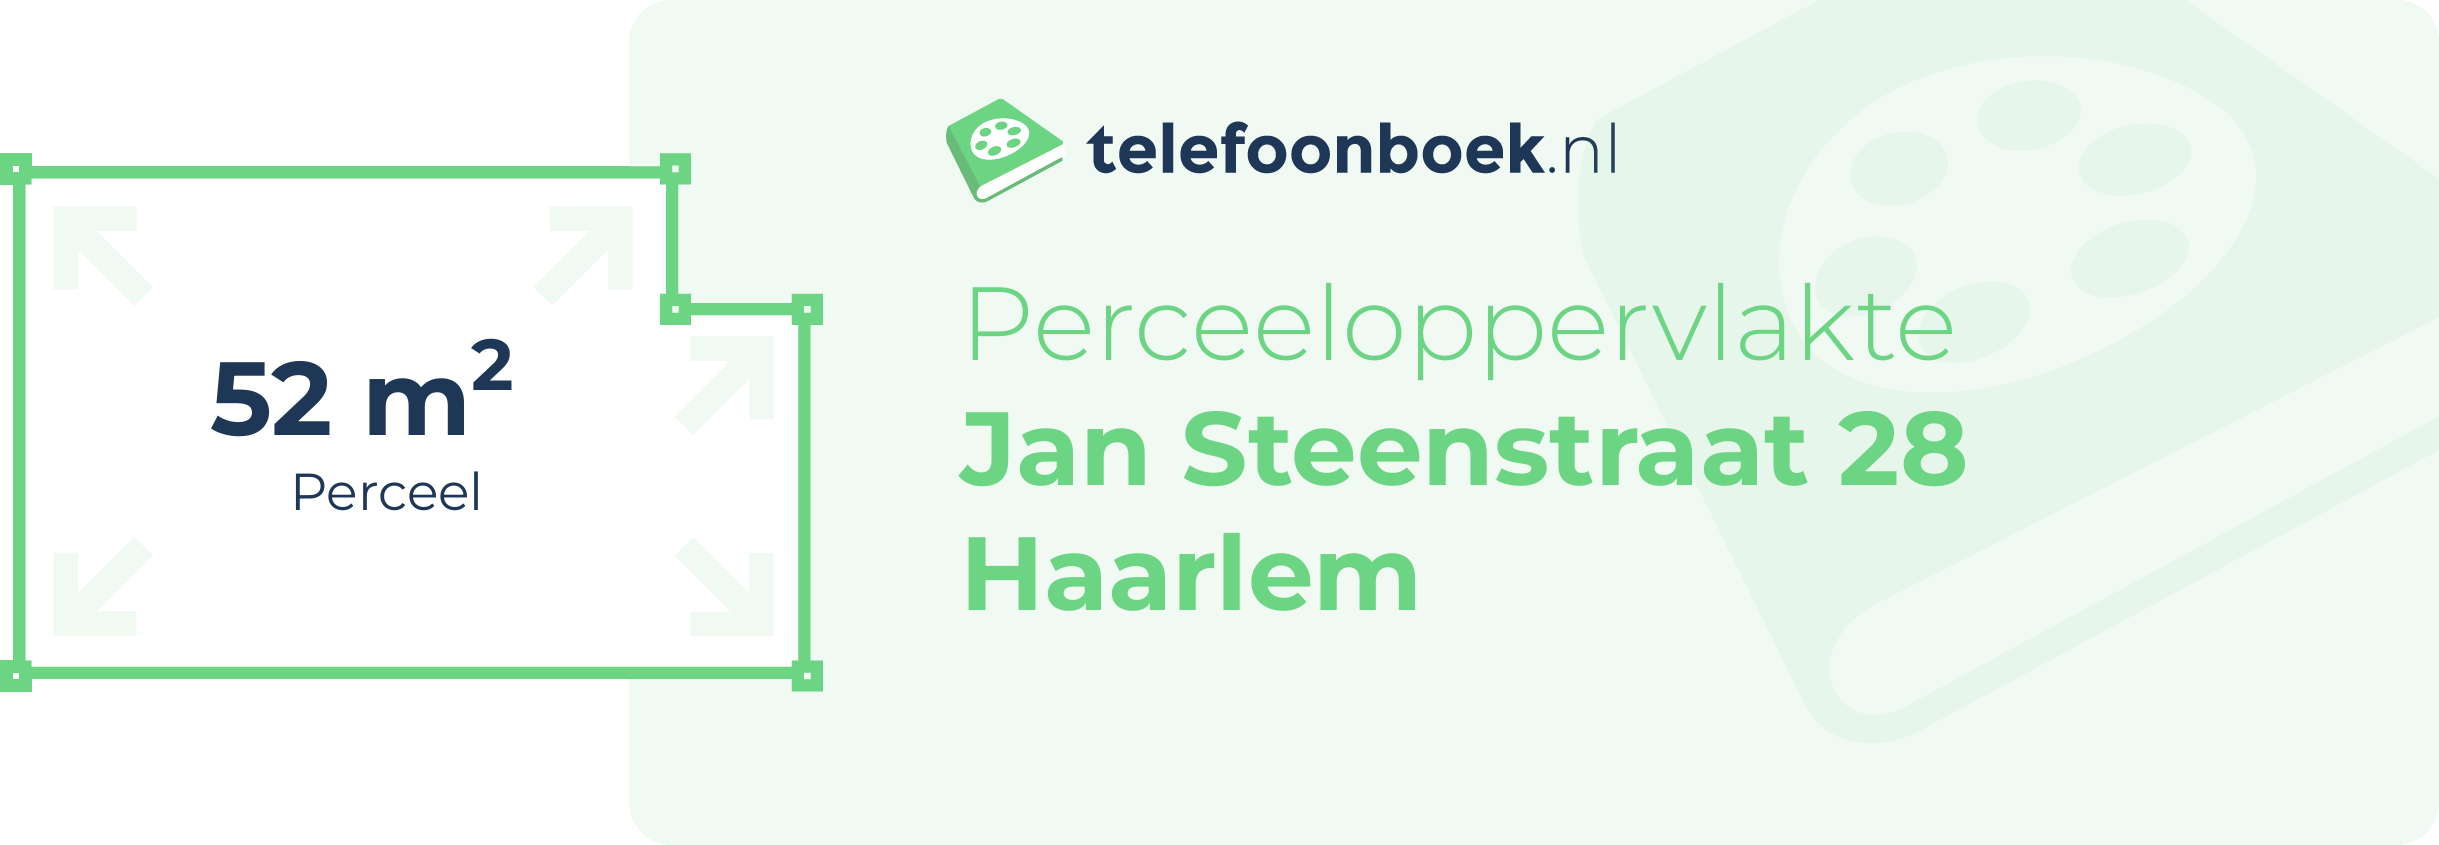 Perceeloppervlakte Jan Steenstraat 28 Haarlem